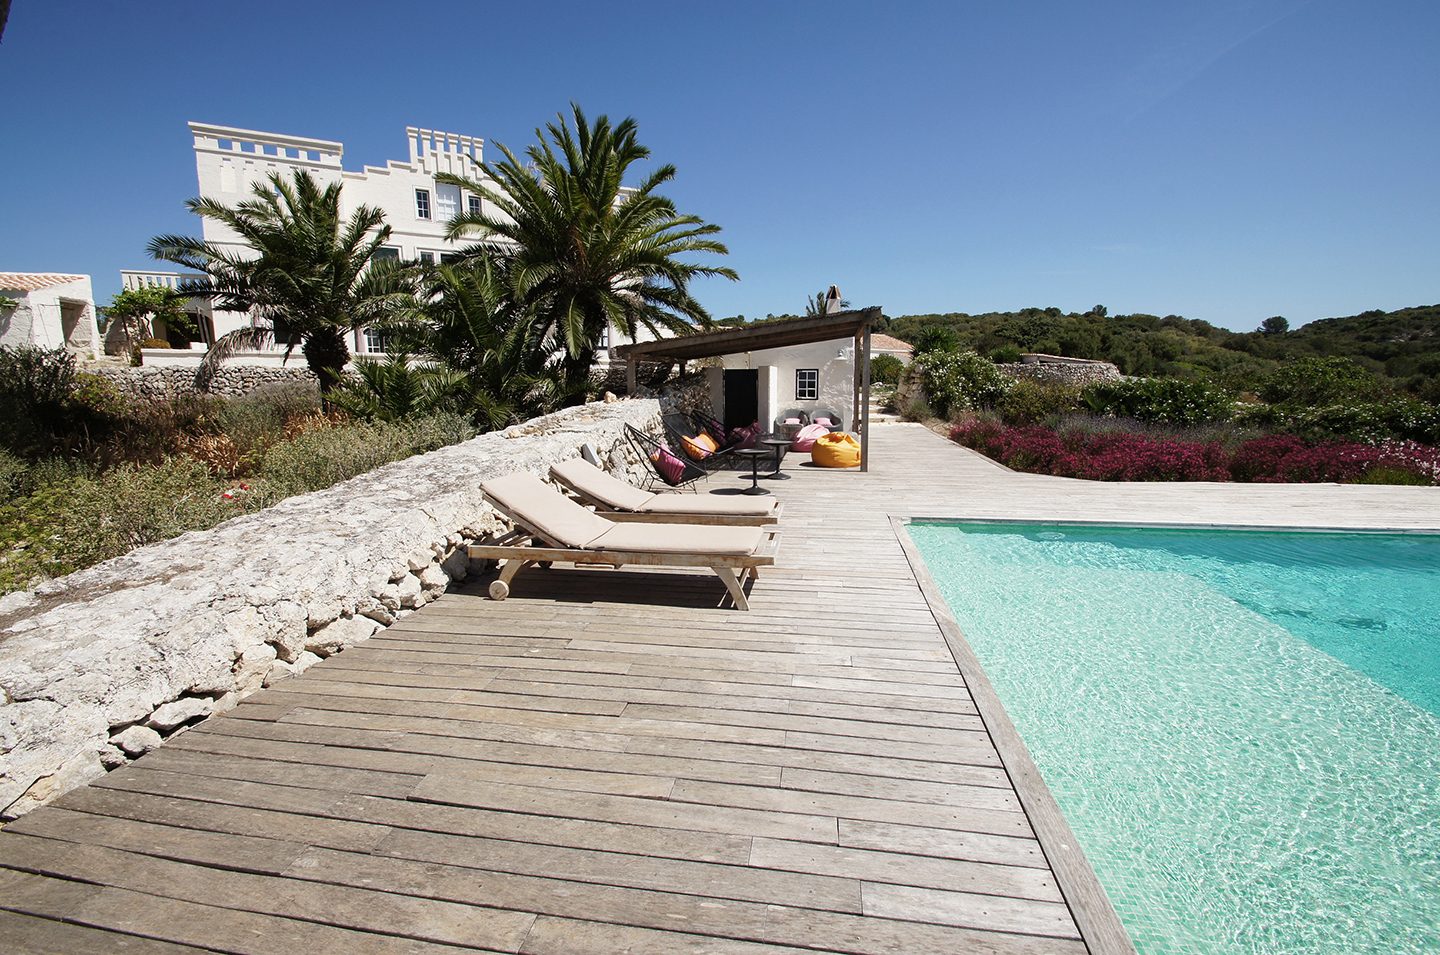 Exclusiva y privada villa de 5 estrellas en alquiler en Menorca